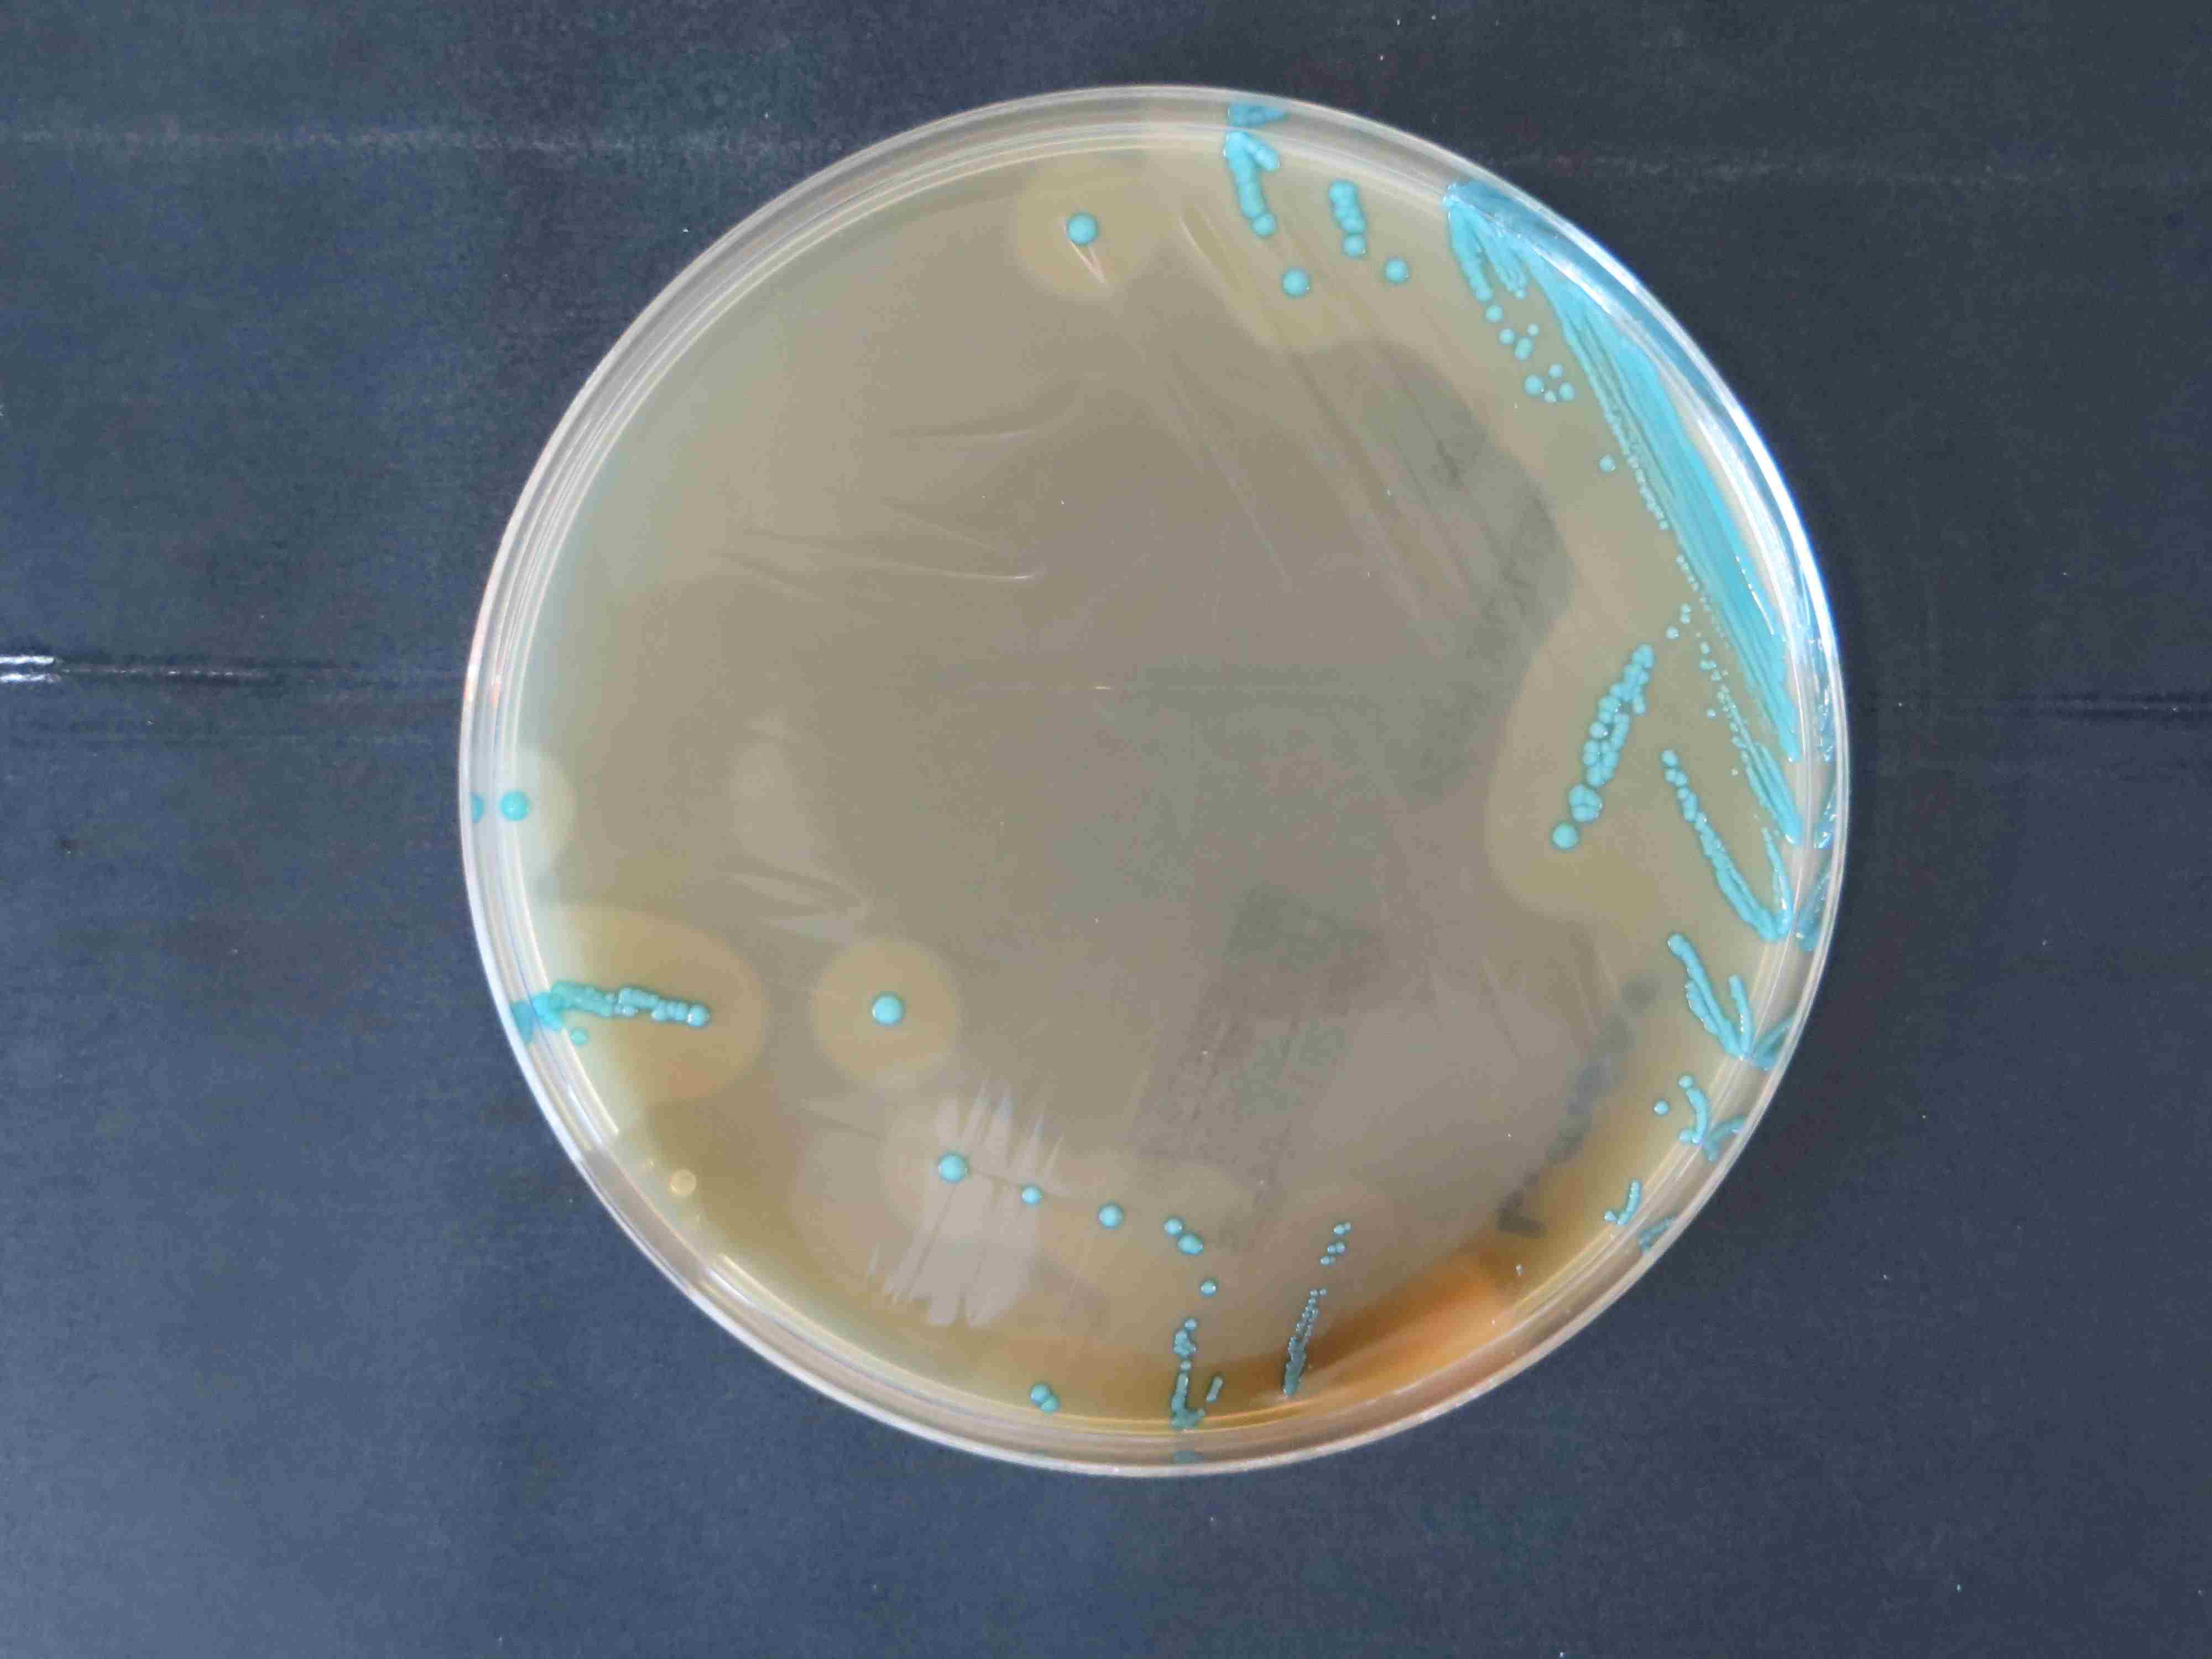  Das Foto zeigt eine Petrischale nach Ausstrich und Bebrütung des Untersuchungsmediums von oben. Man sieht den Bewuchs mit einzelnen türkisfarbenen Kolonien.